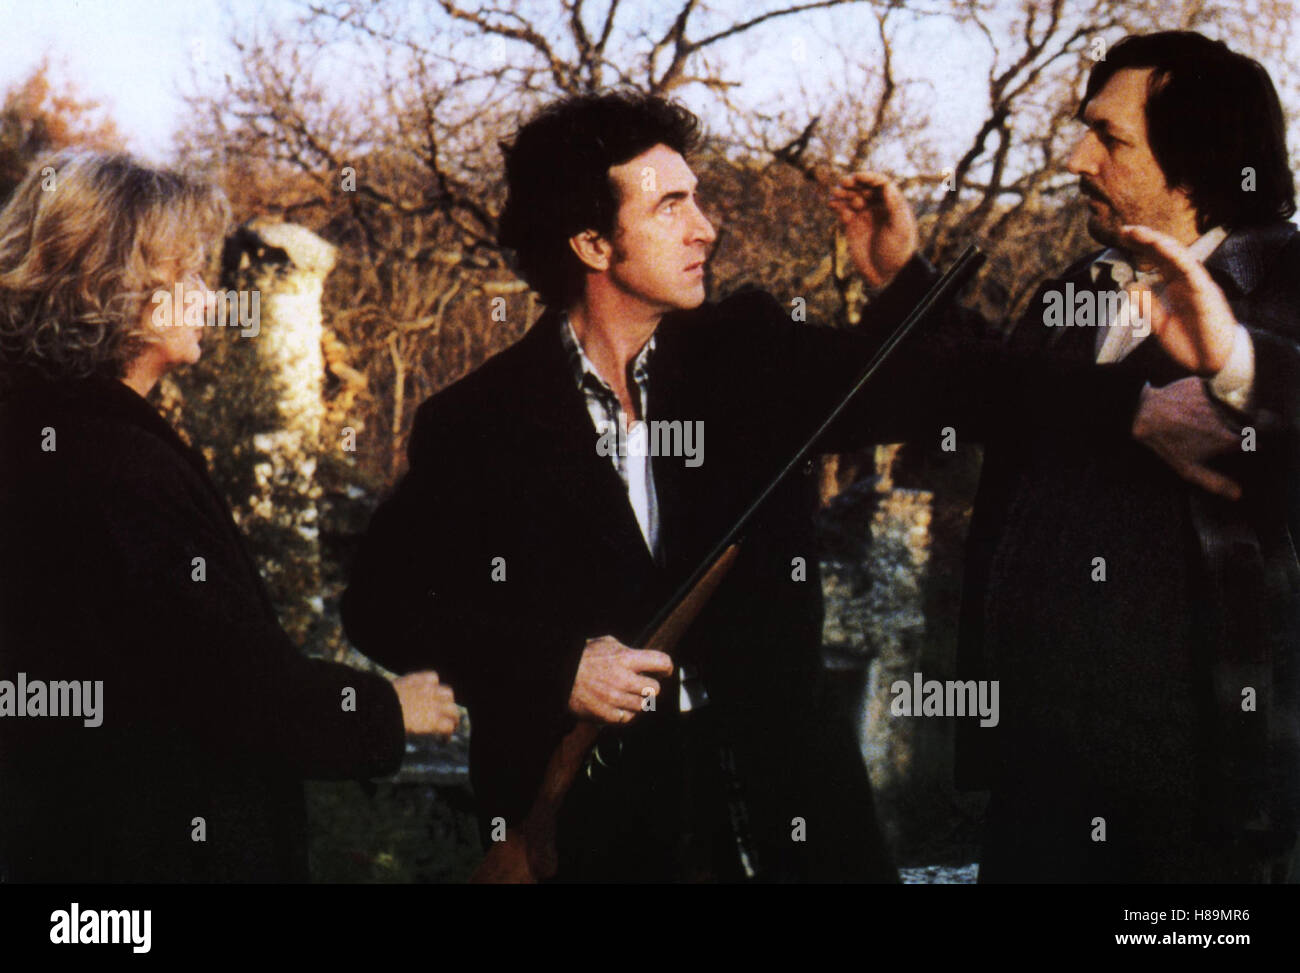 König, Dame, Bube, (L'DE MINUIT PAR SONDAGES) F 1998, Regie : Danièle Dubroux, Danièle DUBROUX, François Cluzet, SERGE RIABOUKINE, Ausdruck : Gewehr, Waffe, Hände hoch Banque D'Images